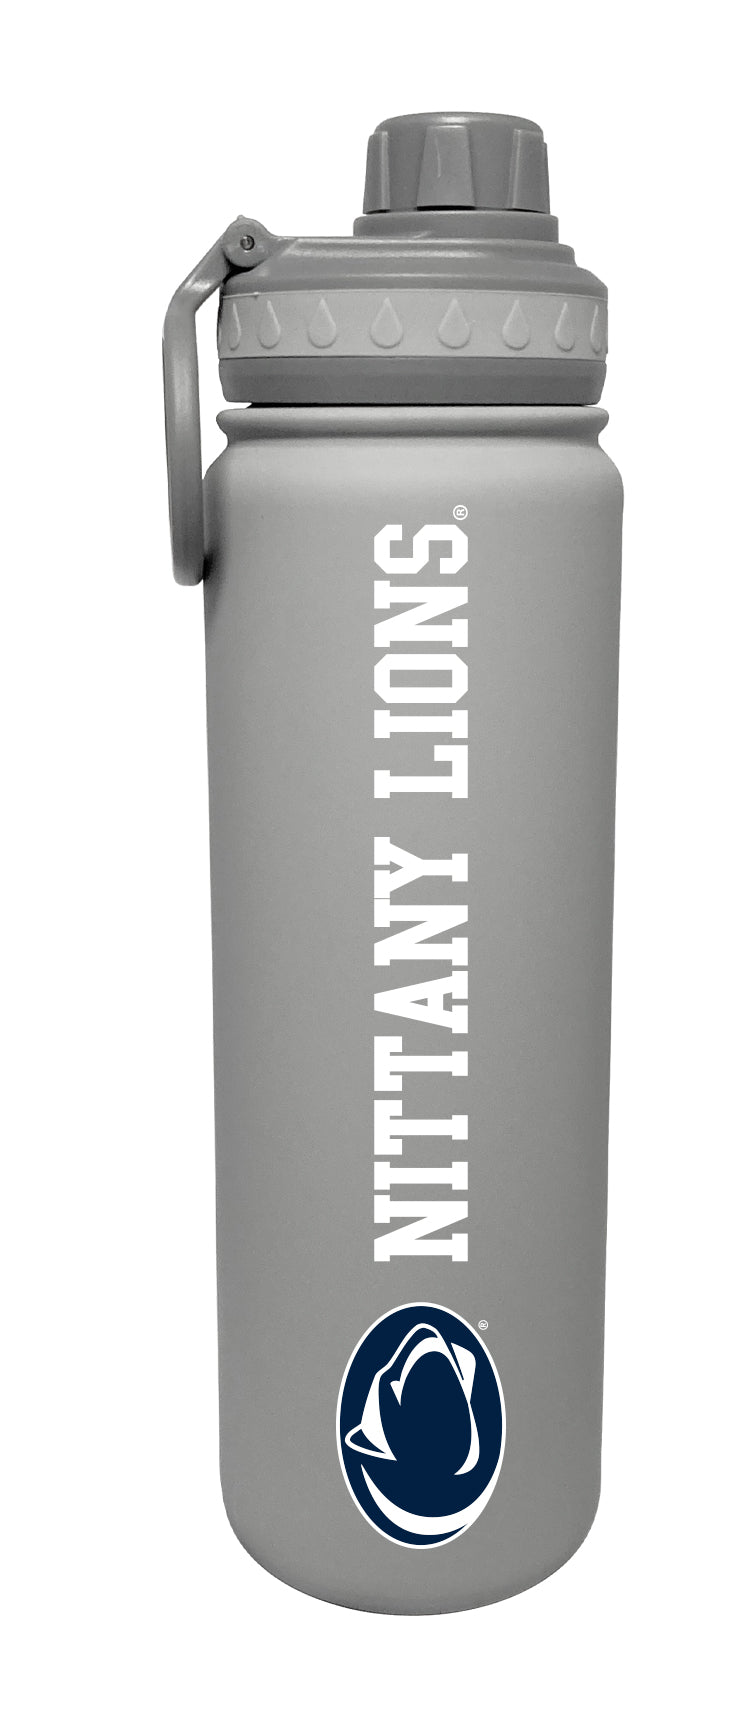 WSU Fanatics 24 oz. Stainless Steel Water Bottle